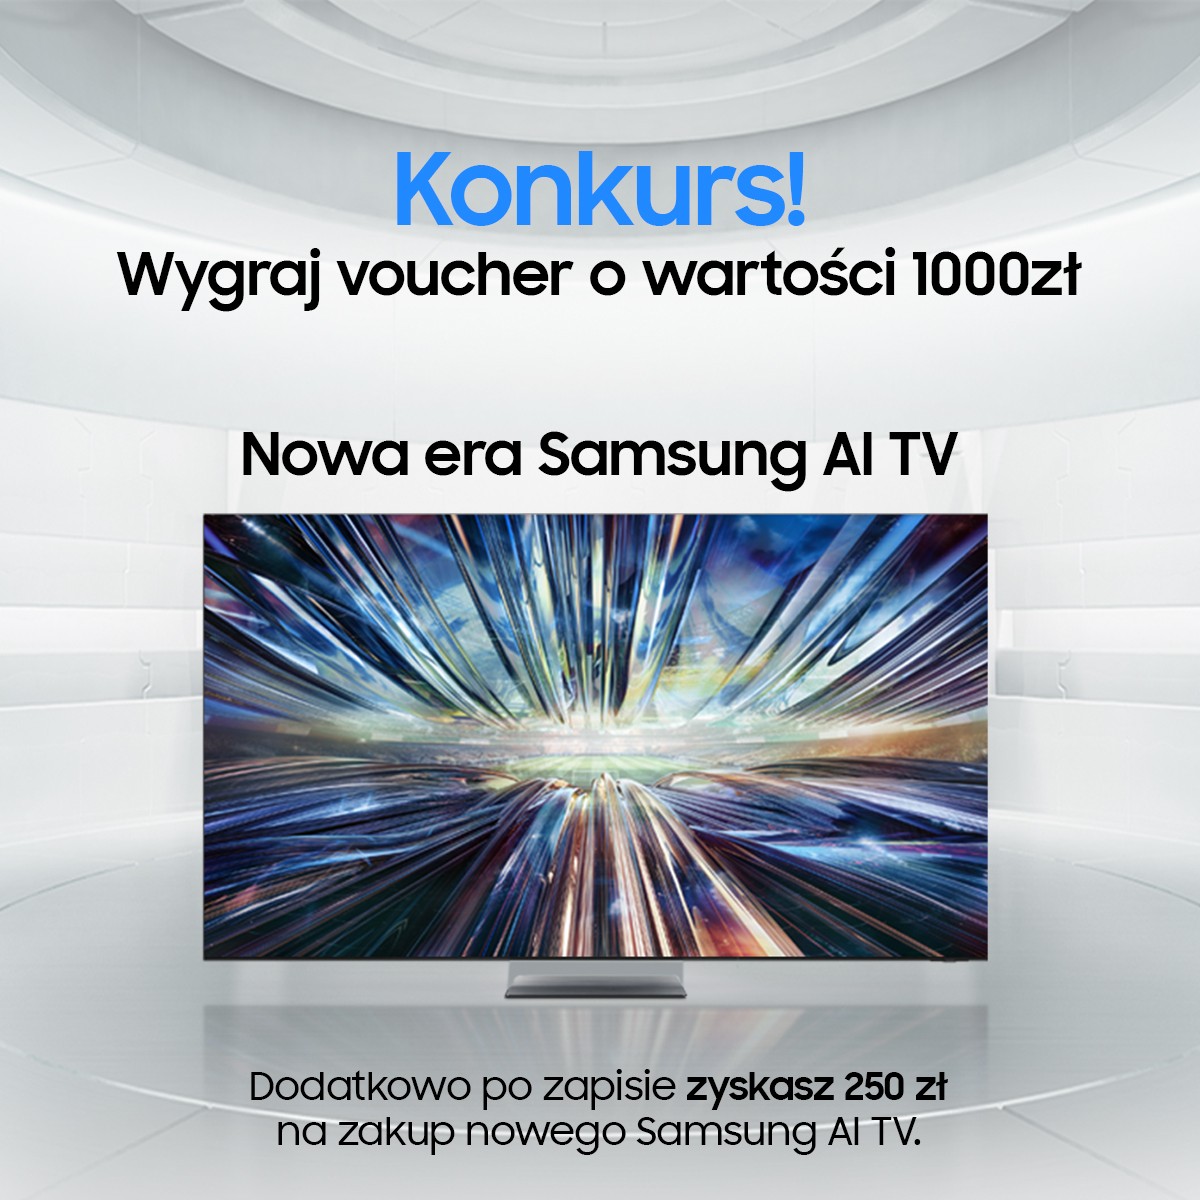 Samsung konkurs 1000 zł